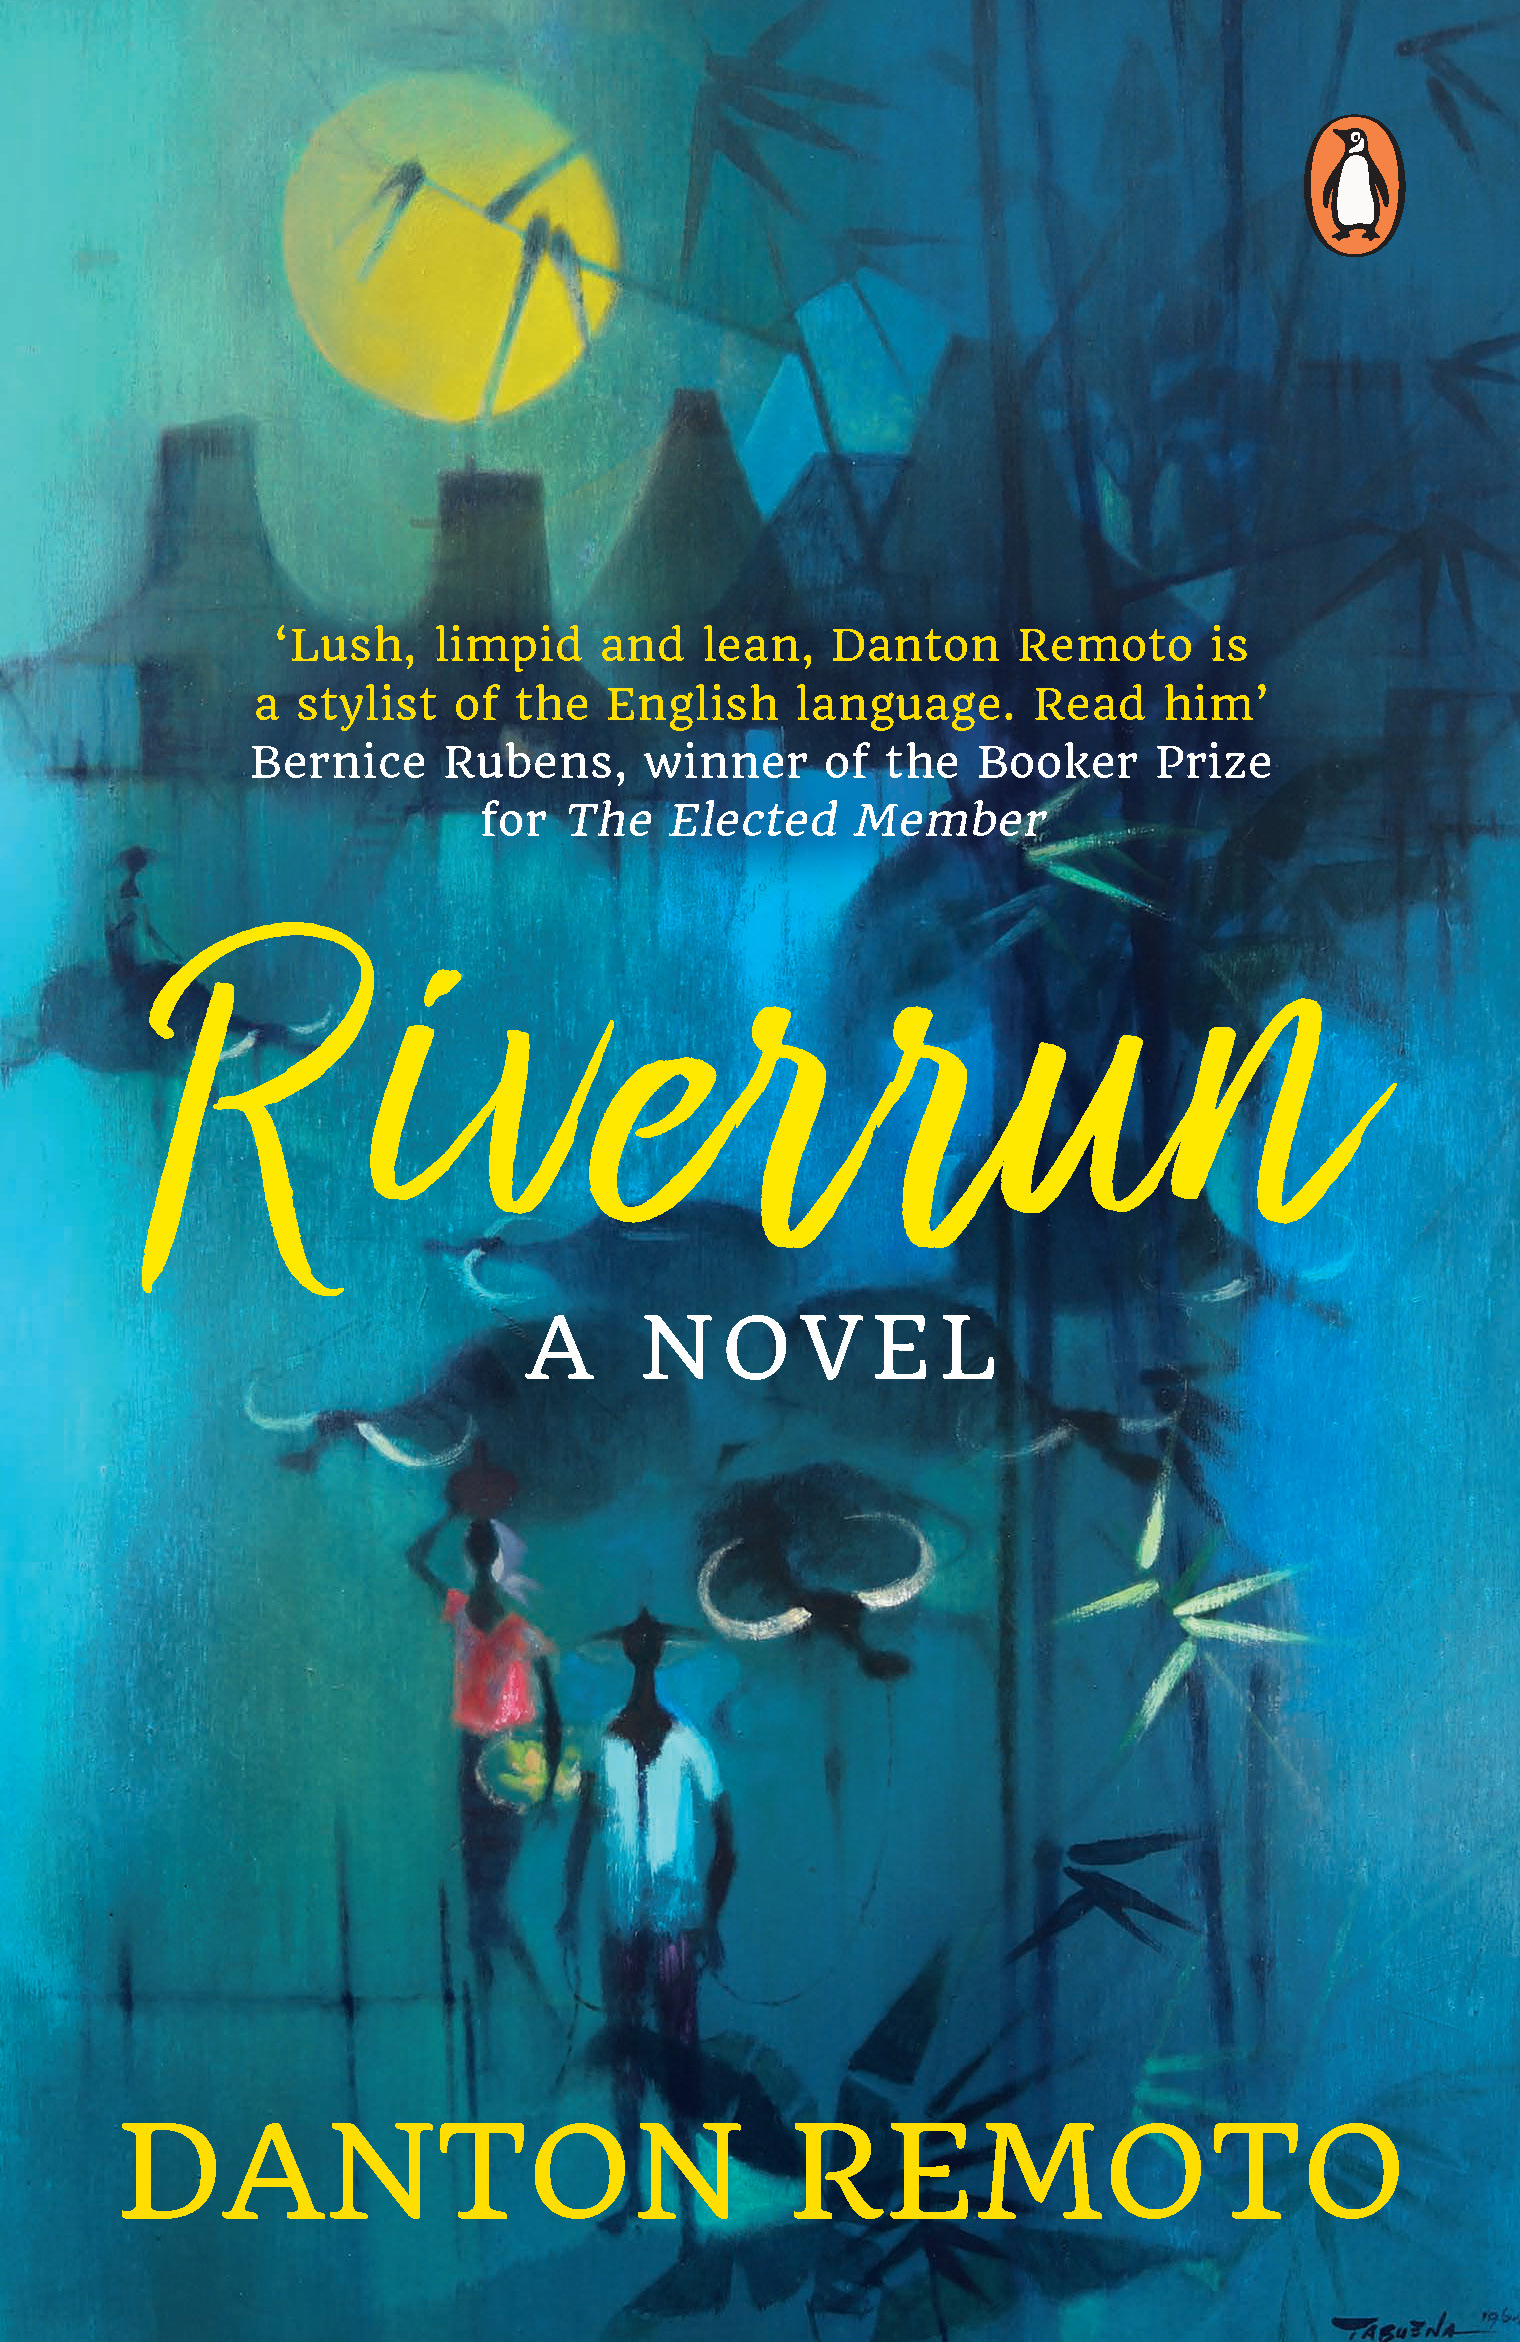 Riverrun a novel